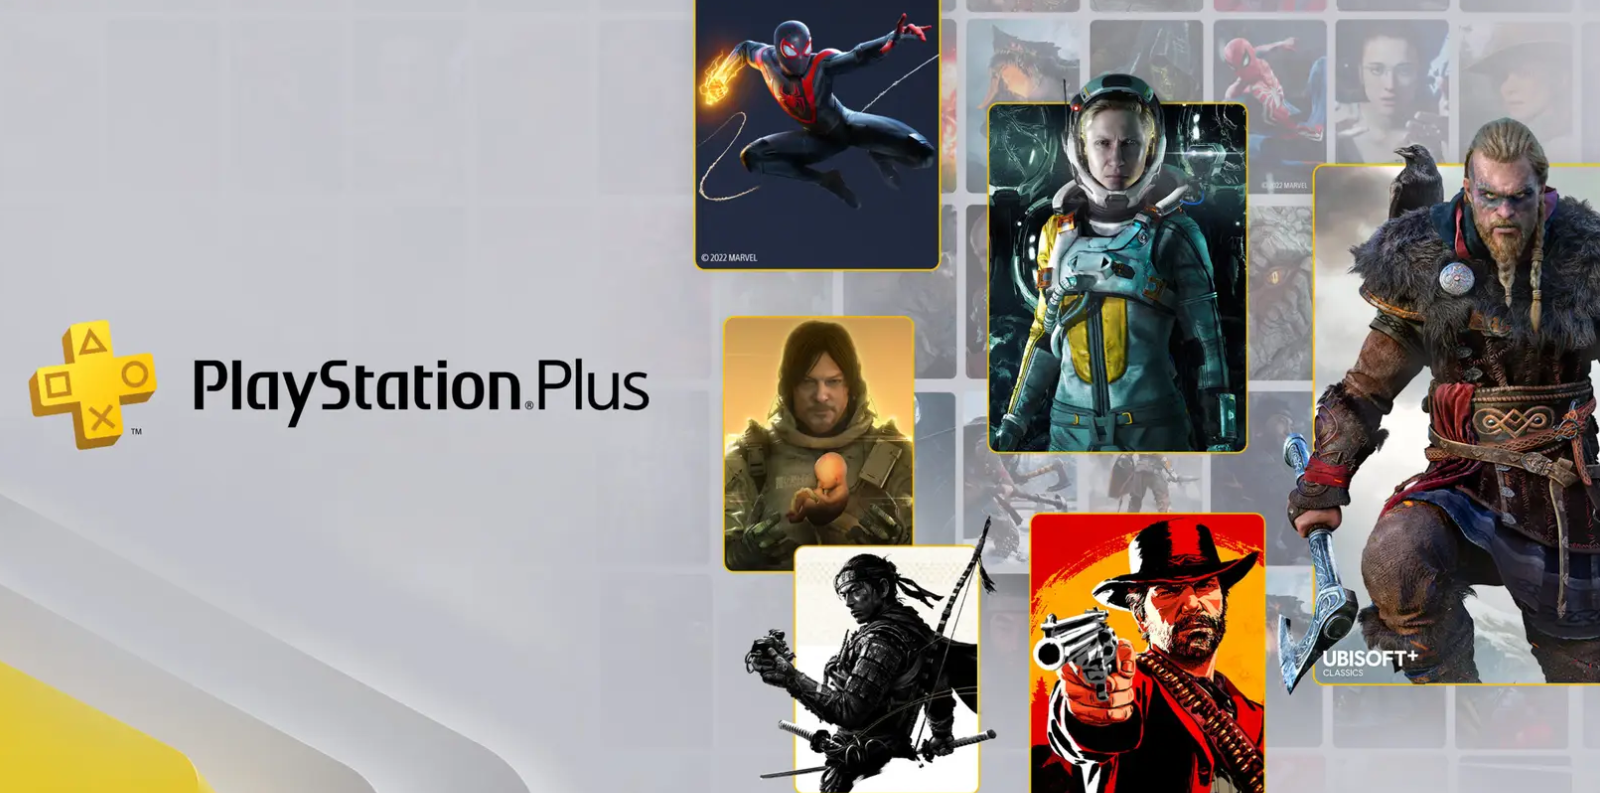 Immagine di PlayStation Plus svelata la line-up dei giochi disponibili nel nuovo servizio in abbonamento!